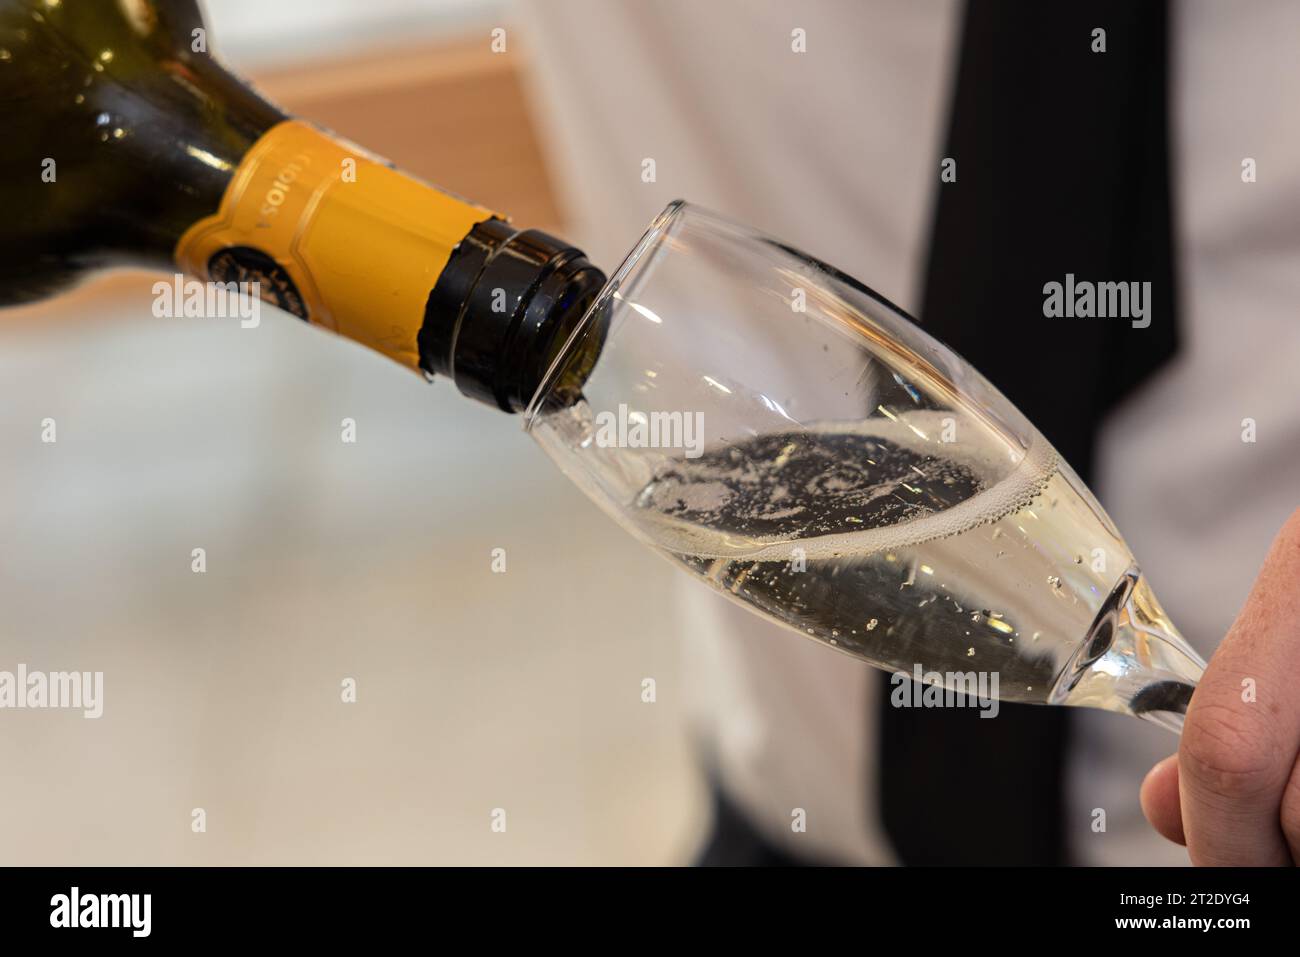 Ein Glas Champagner, das bei einer Party/einem gesellschaftlichen Ereignis gegossen wird Stockfoto